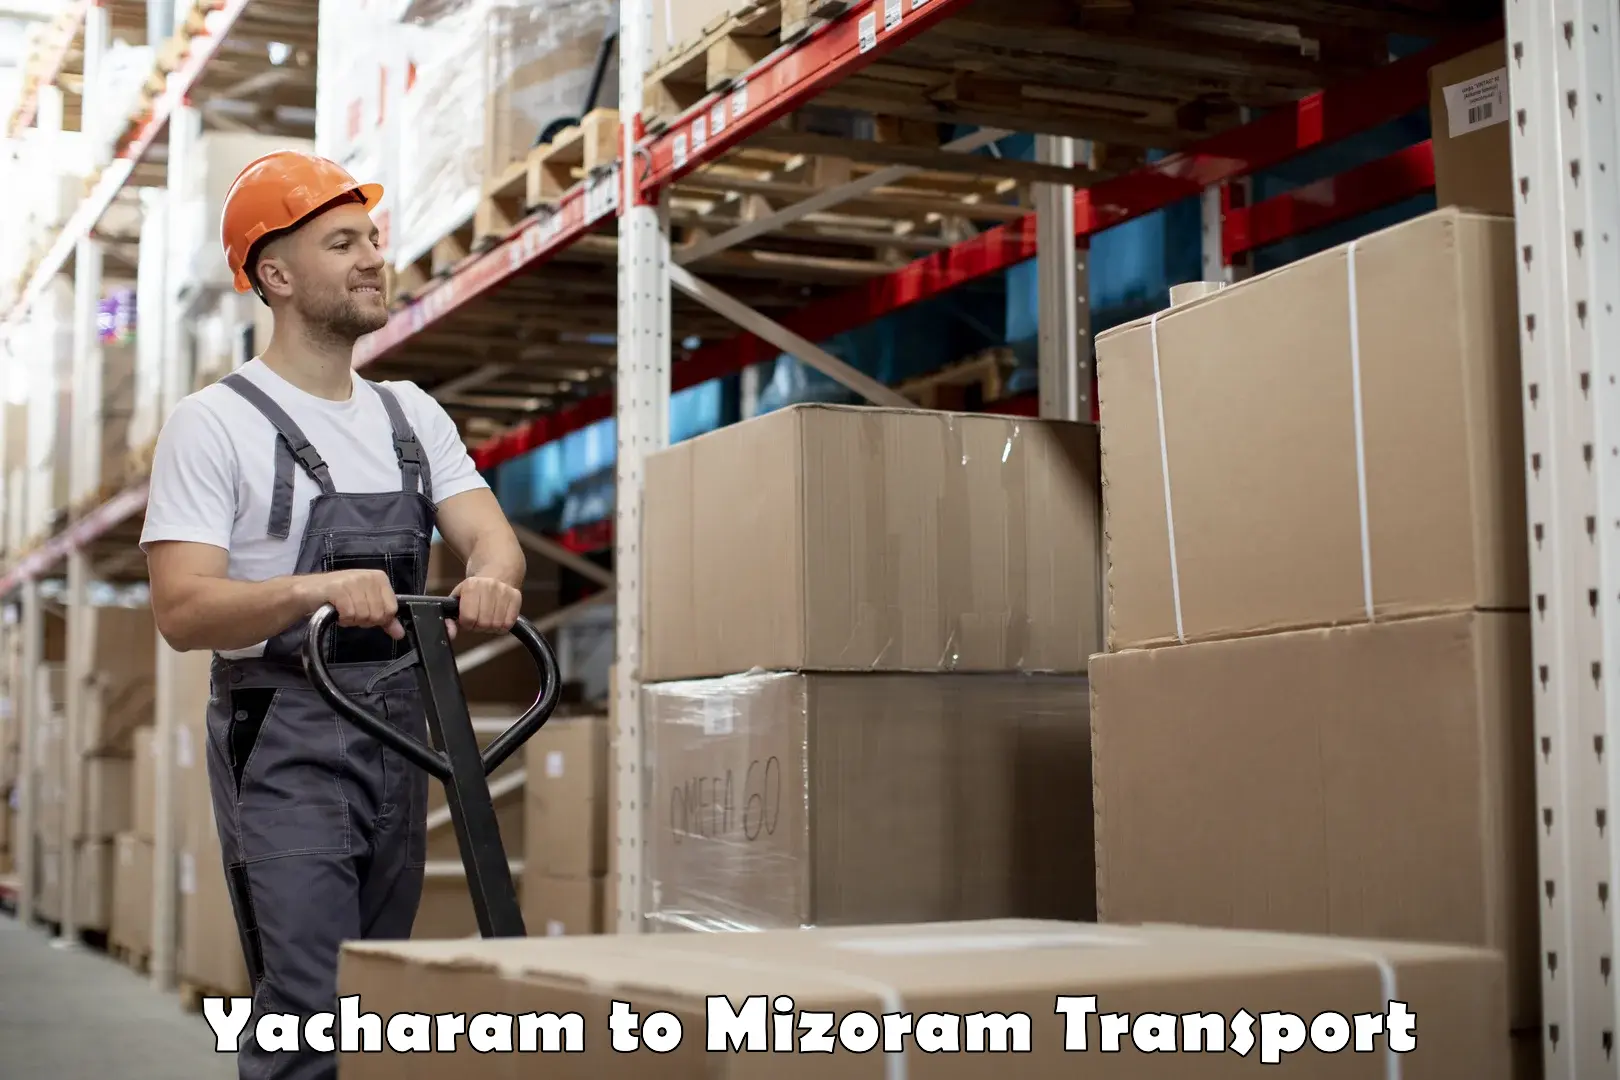 Transport in sharing Yacharam to Mizoram